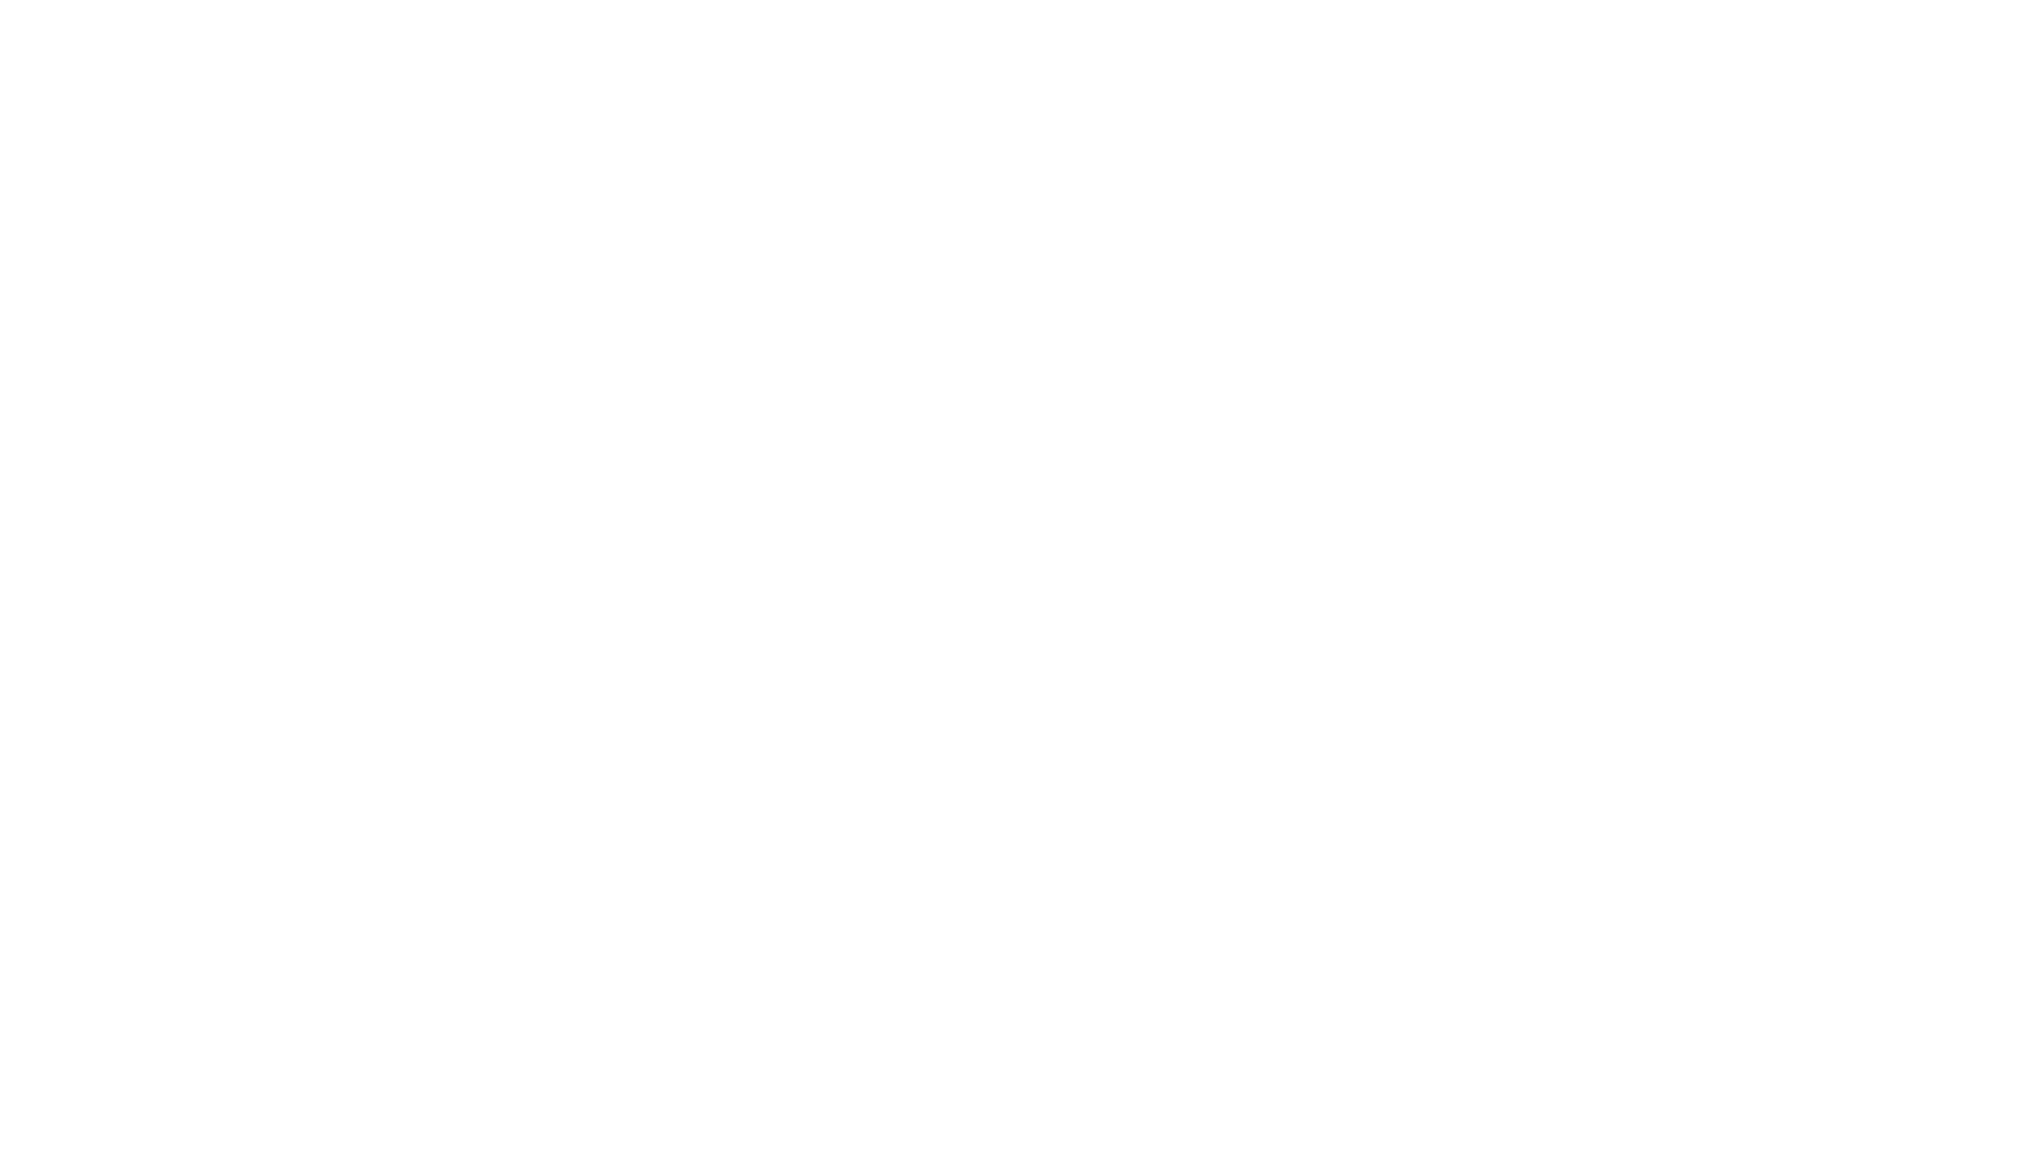 Friends of the Metolius